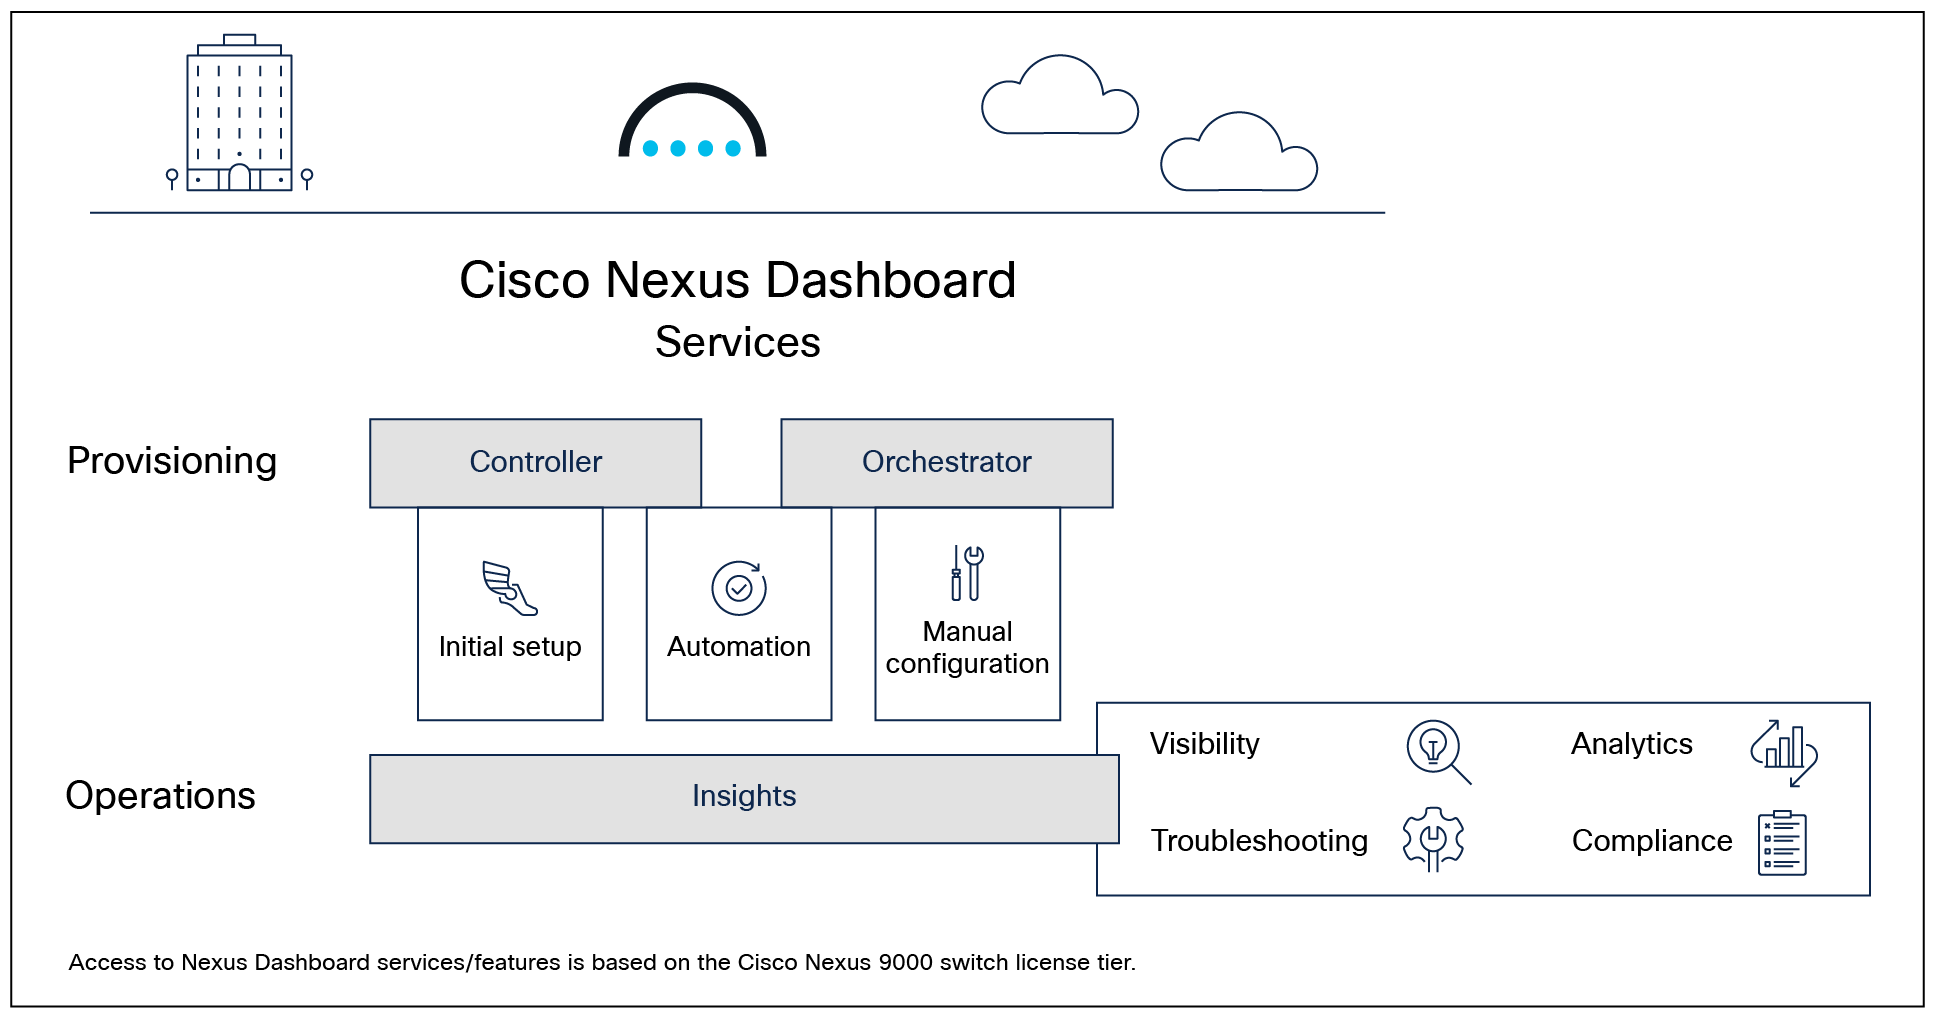 Cisco Nexus Dashboard platform